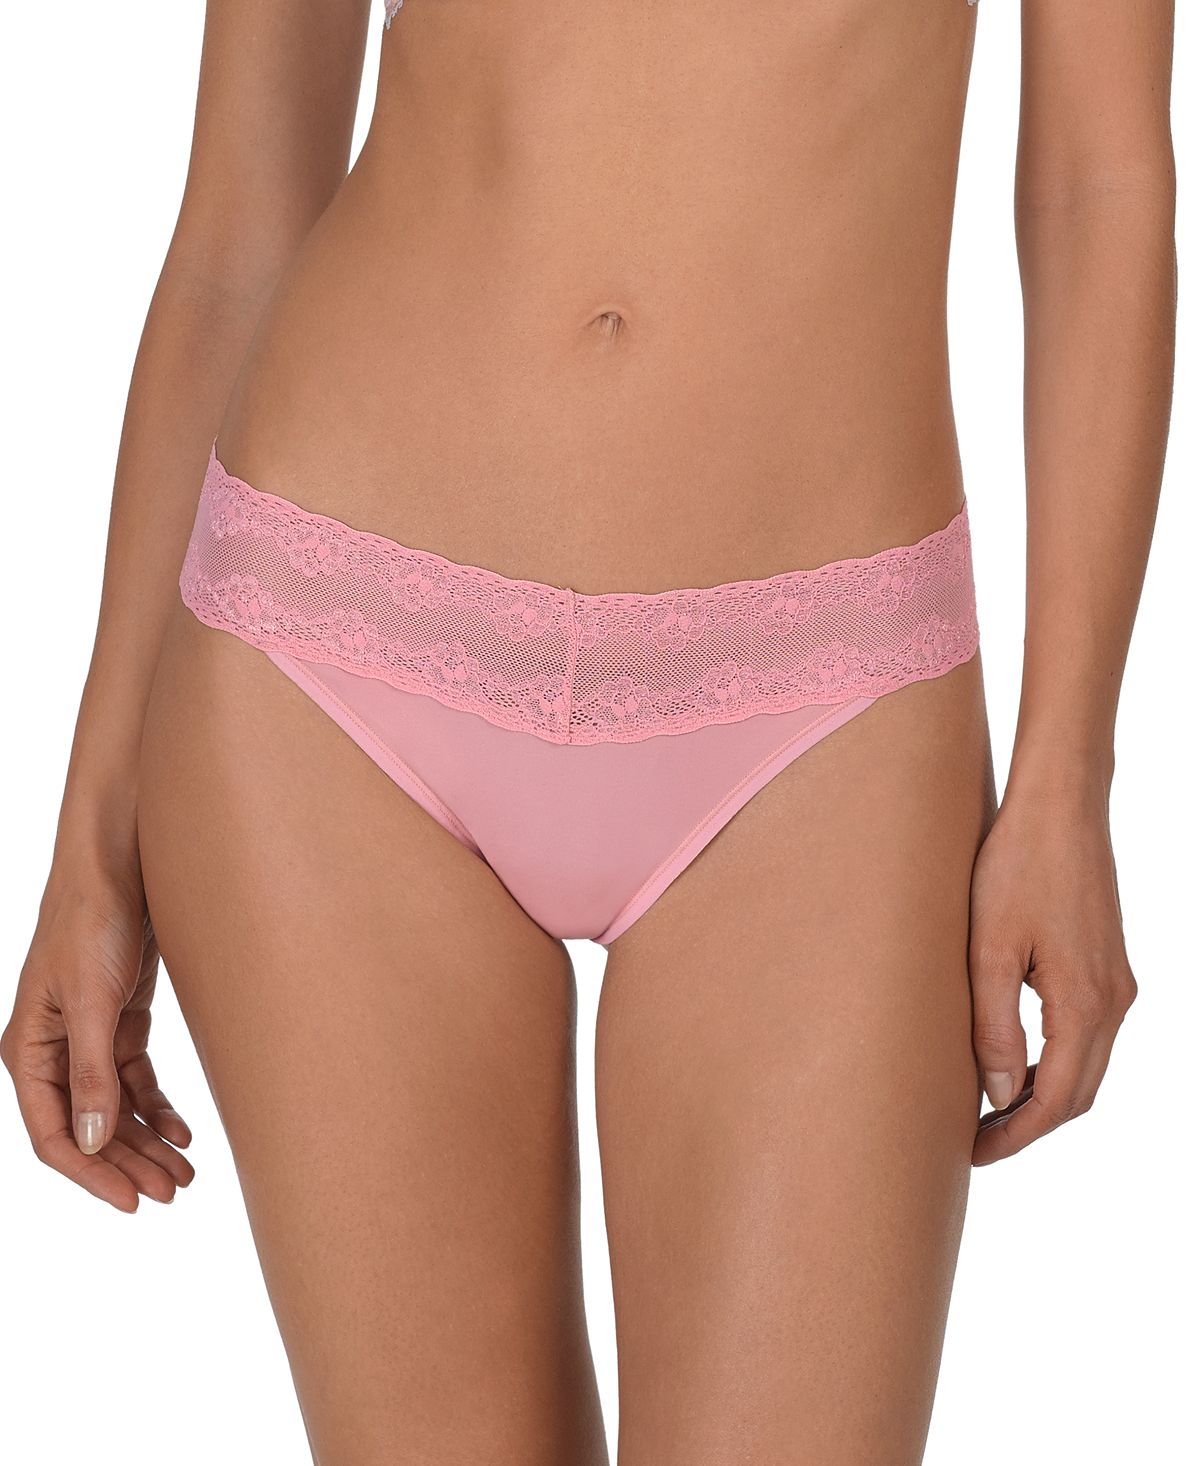 Natori Bliss Perfection Lace-waist Thong Underwear 750092 Taffy